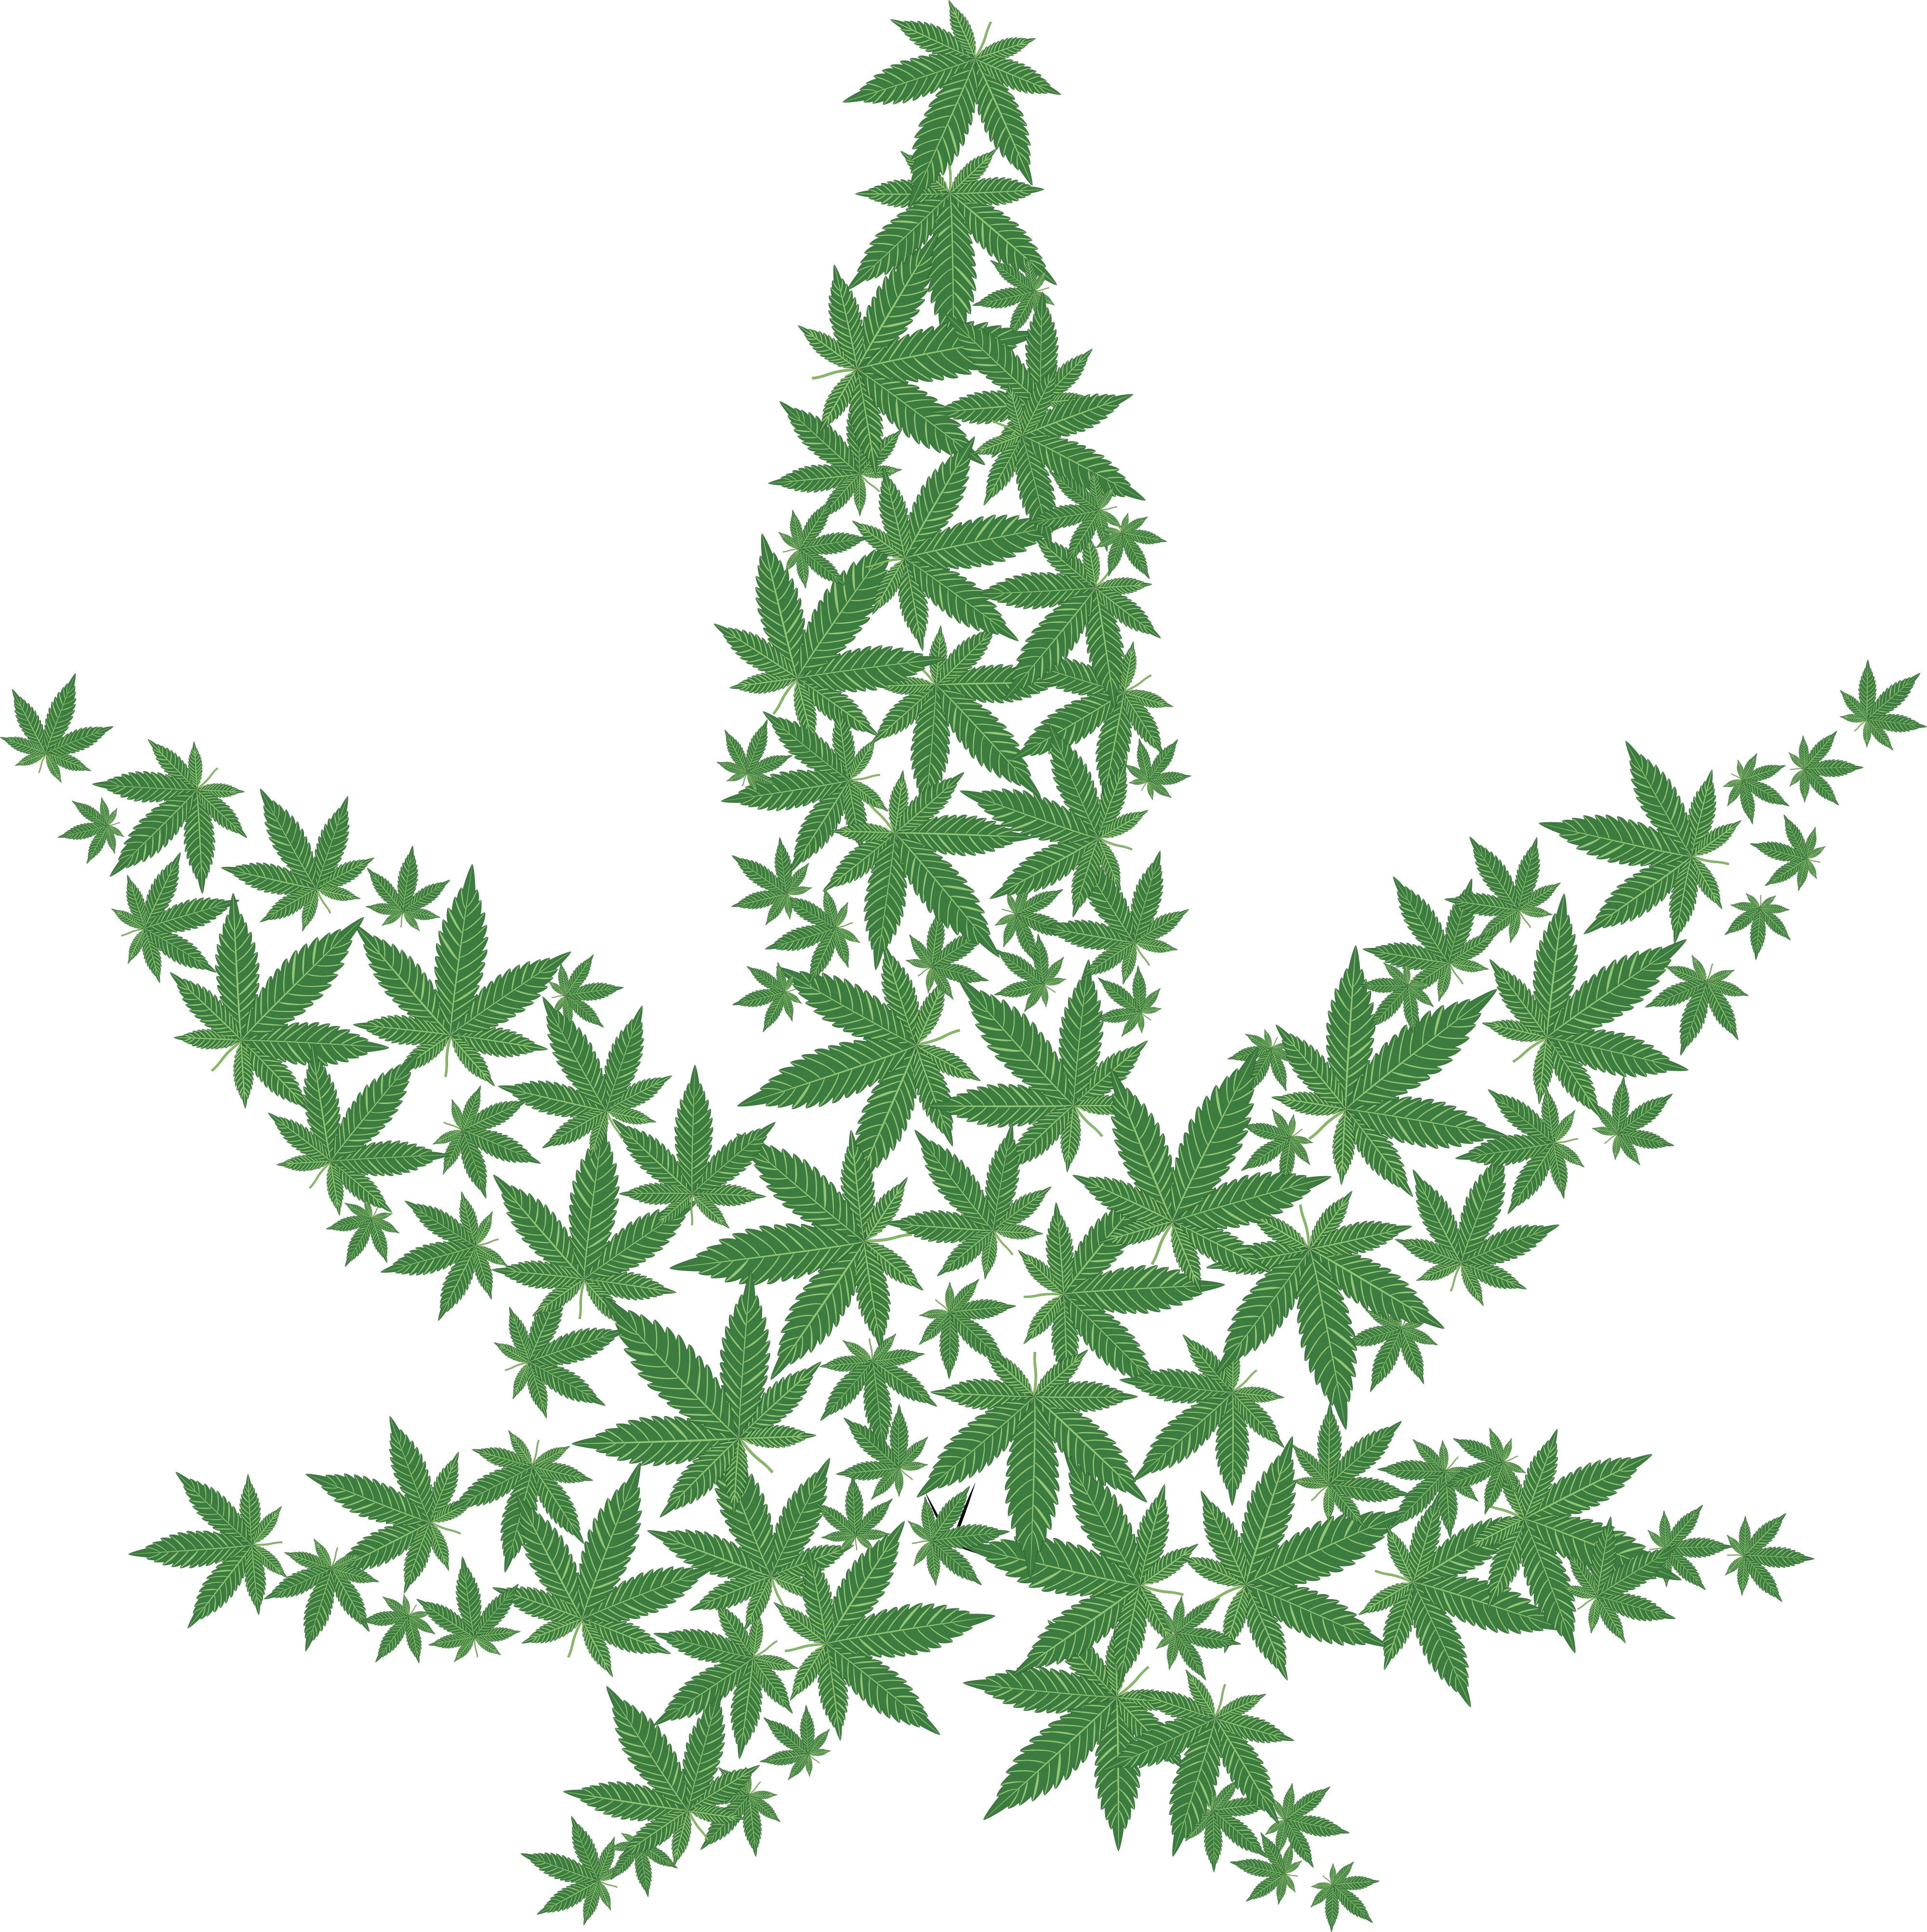 420, cannabis, marijuana, weed